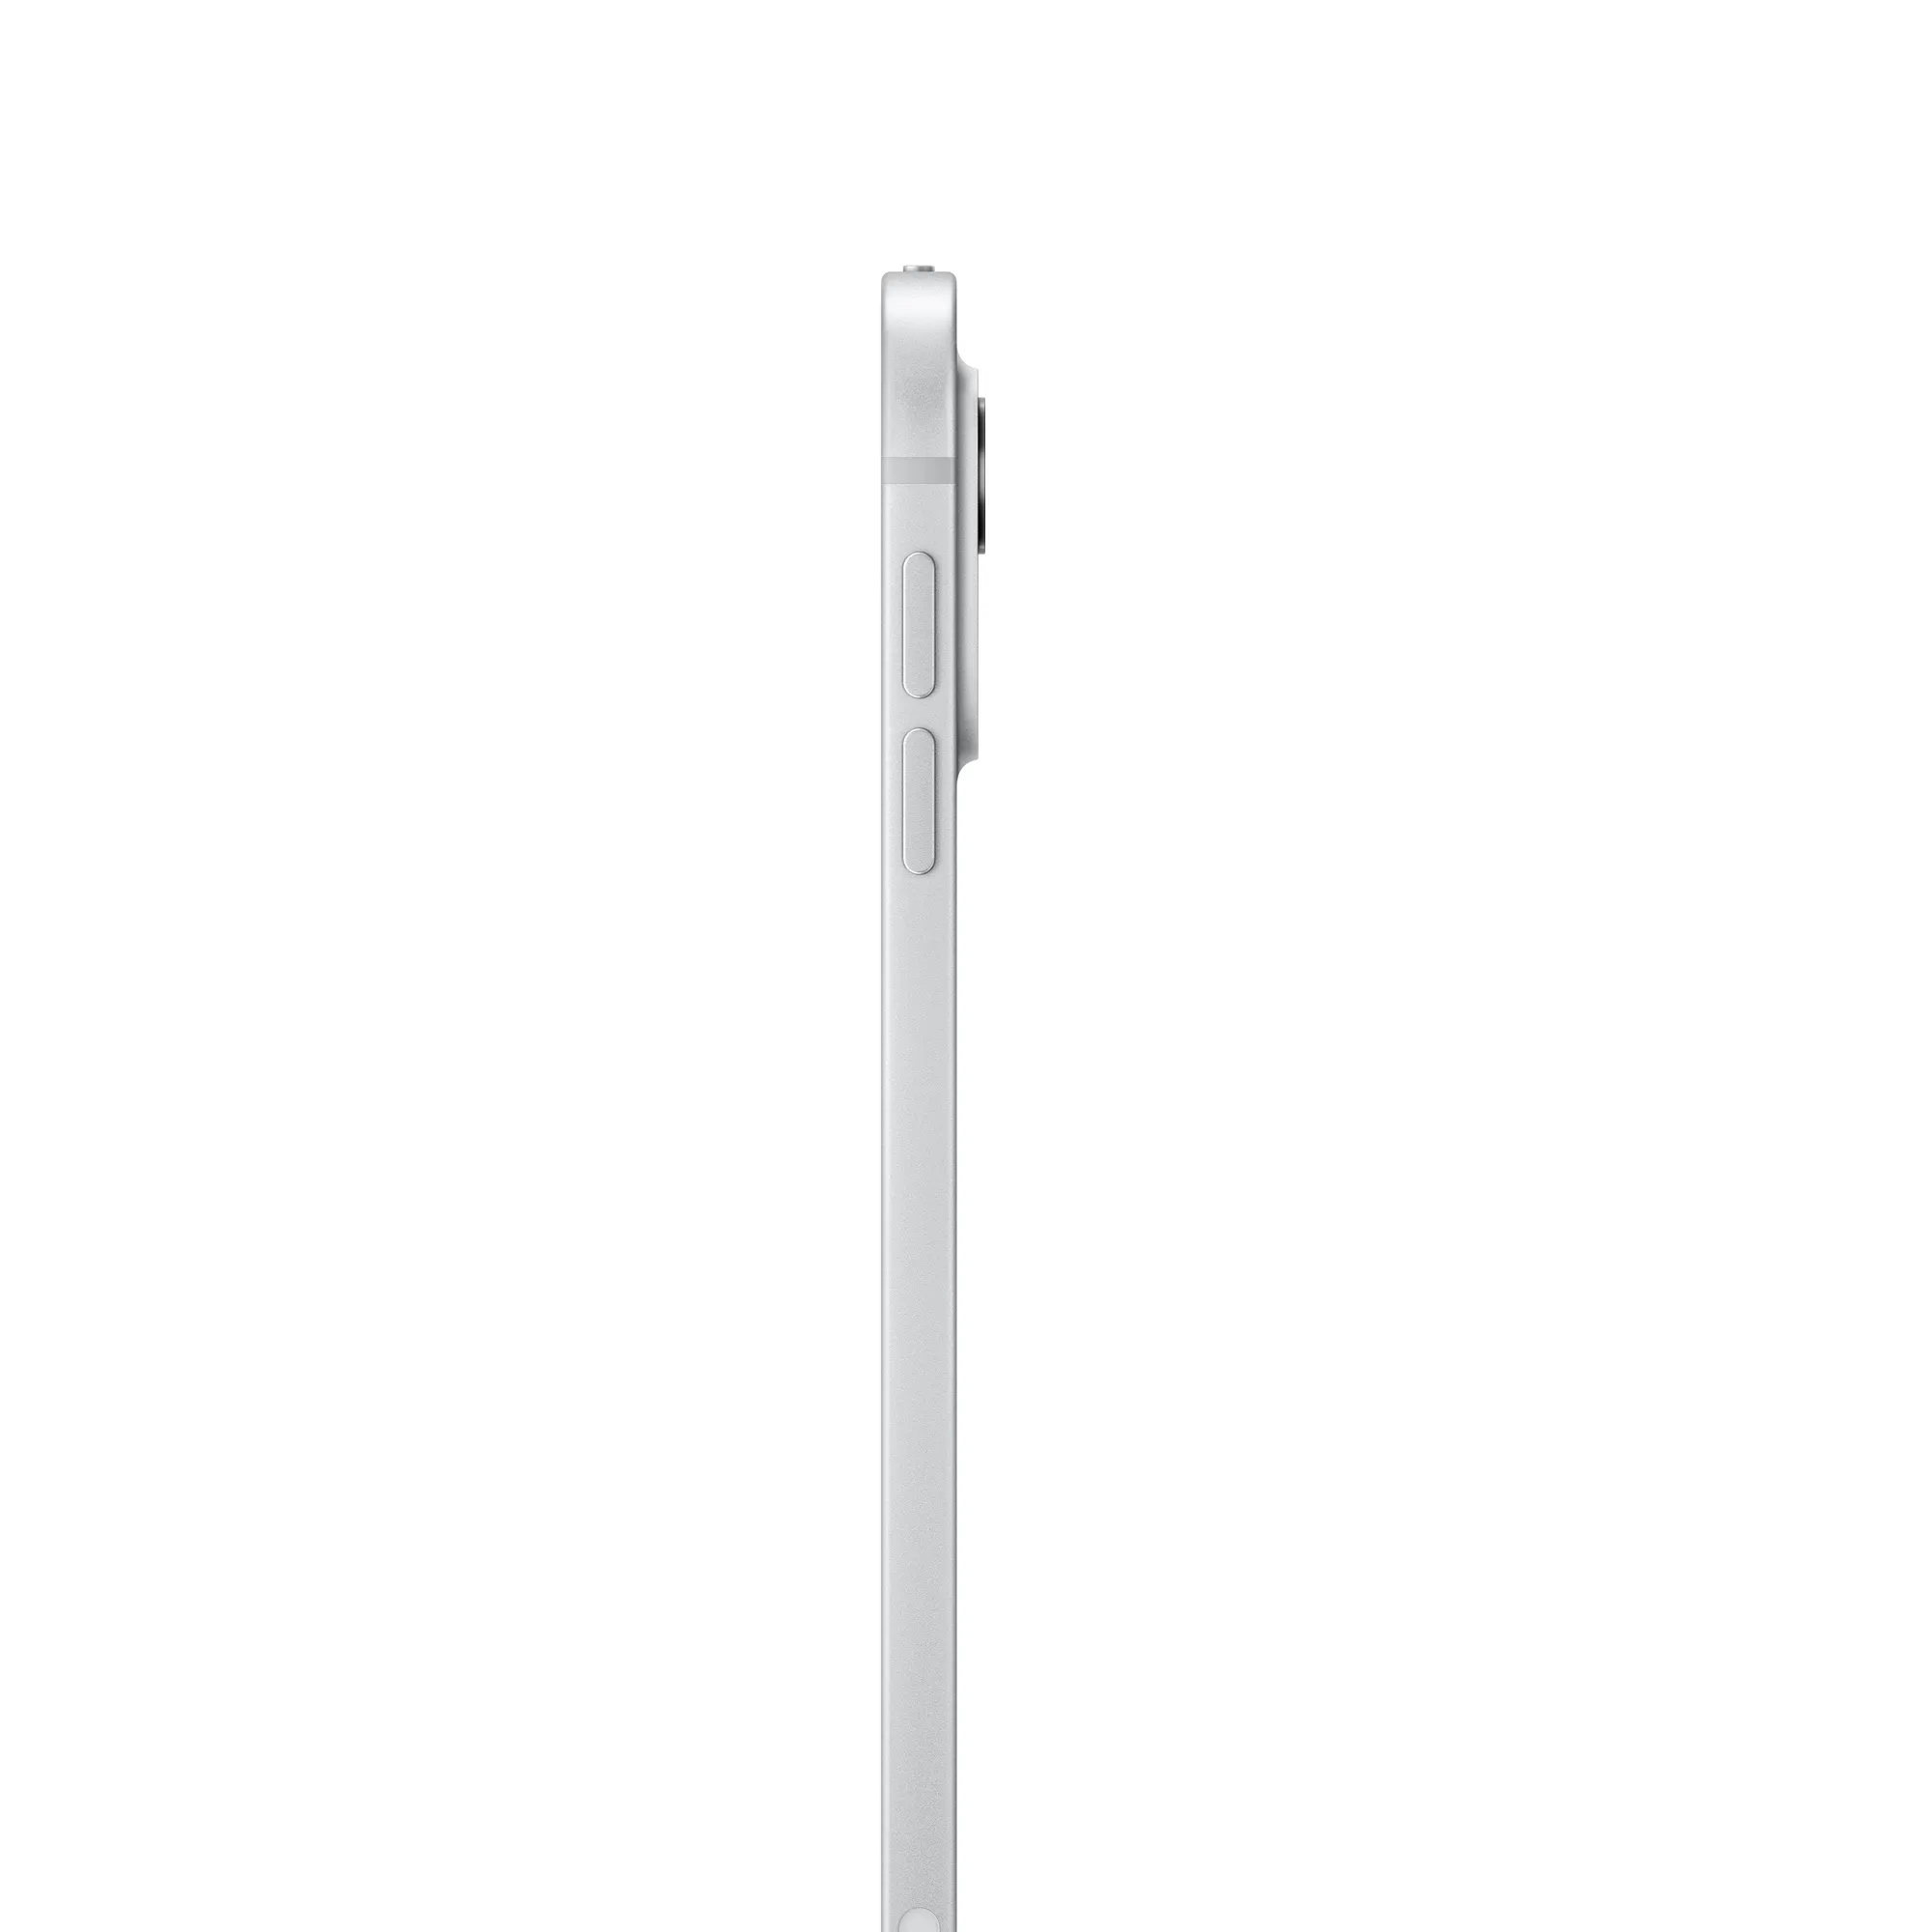 11 hüvelykes iPad Pro, Wi-Fi + Cellular, 512 GB, normál üveg – ezüst